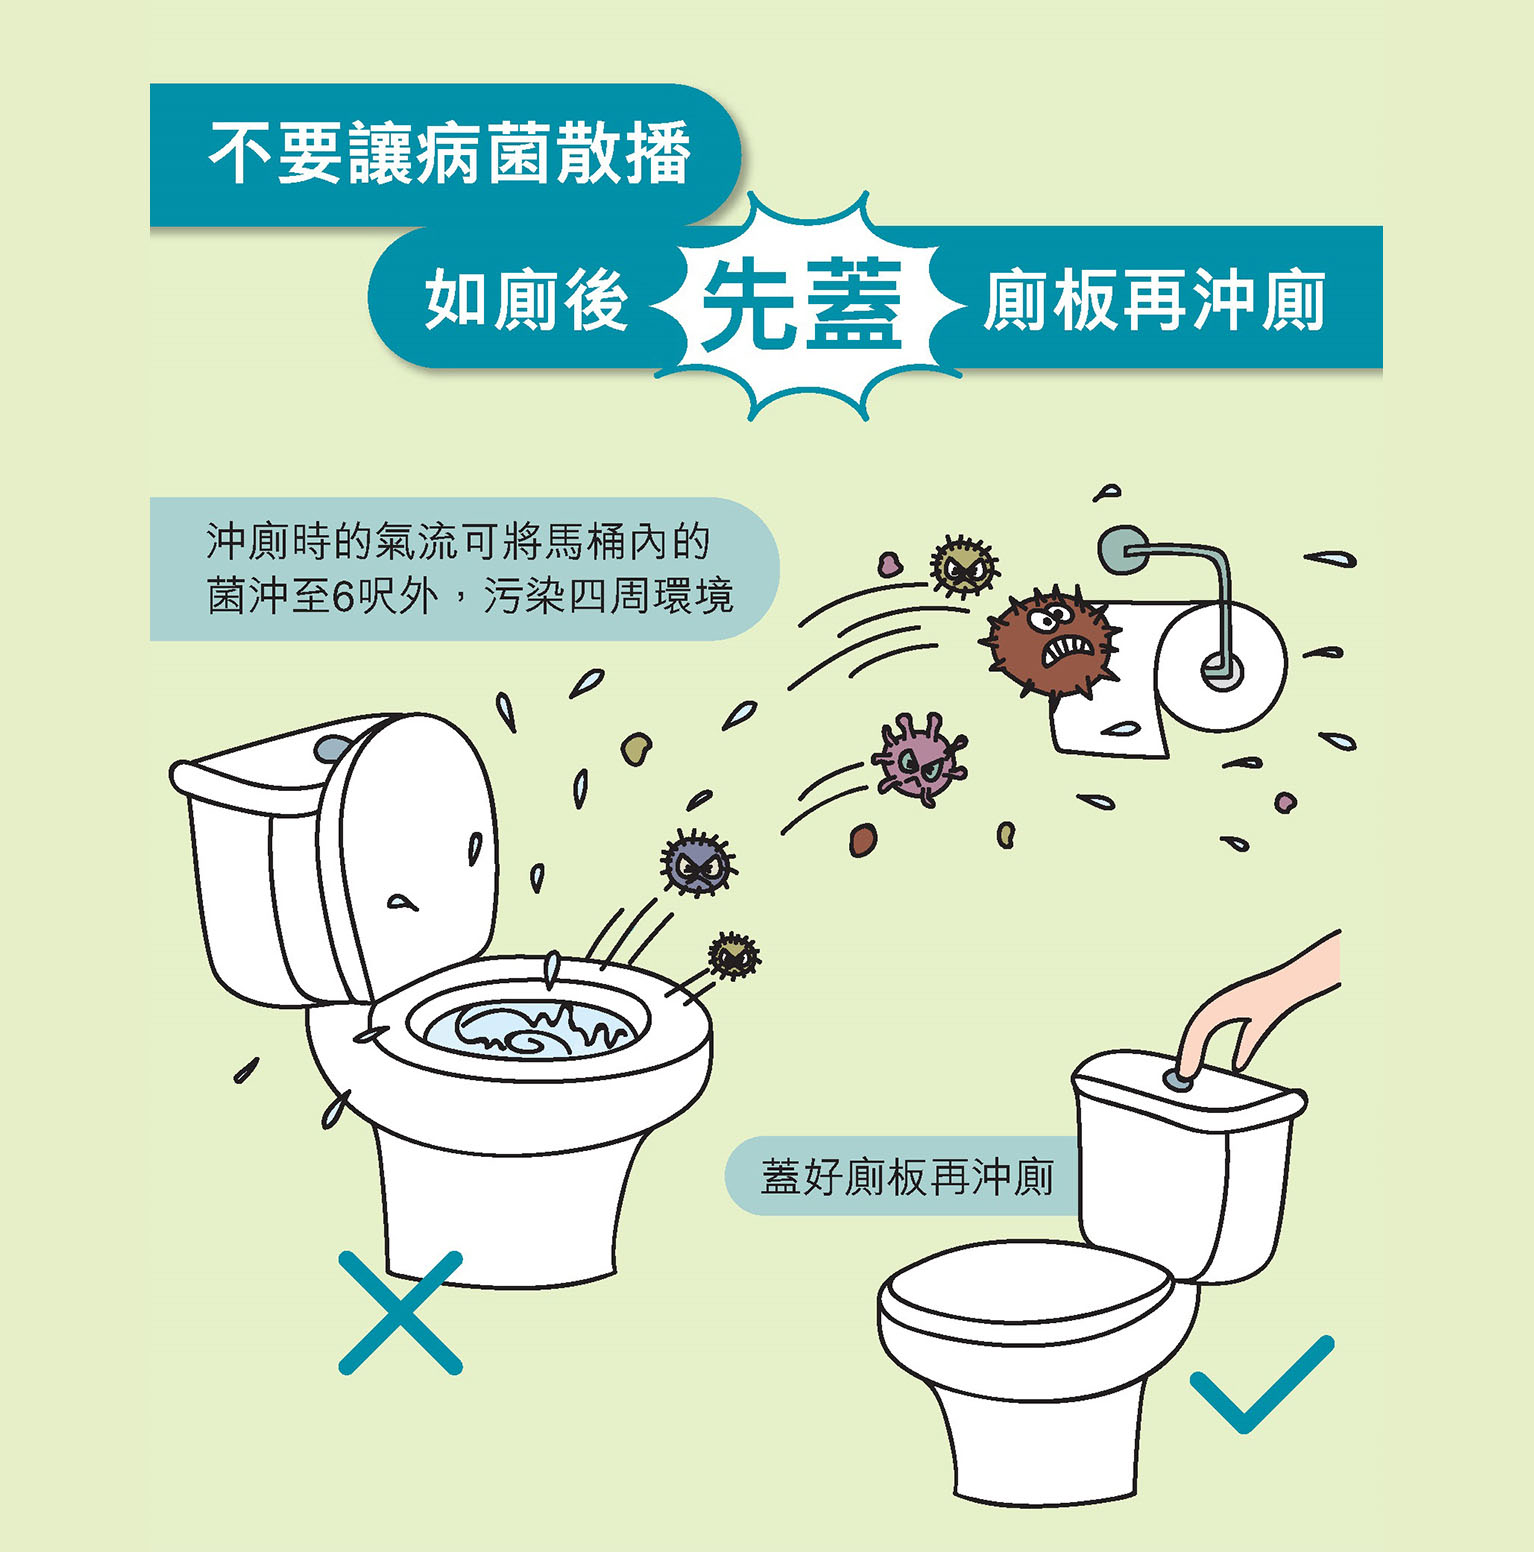 不要讓病菌散播 如廁後先蓋廁板再沖廁